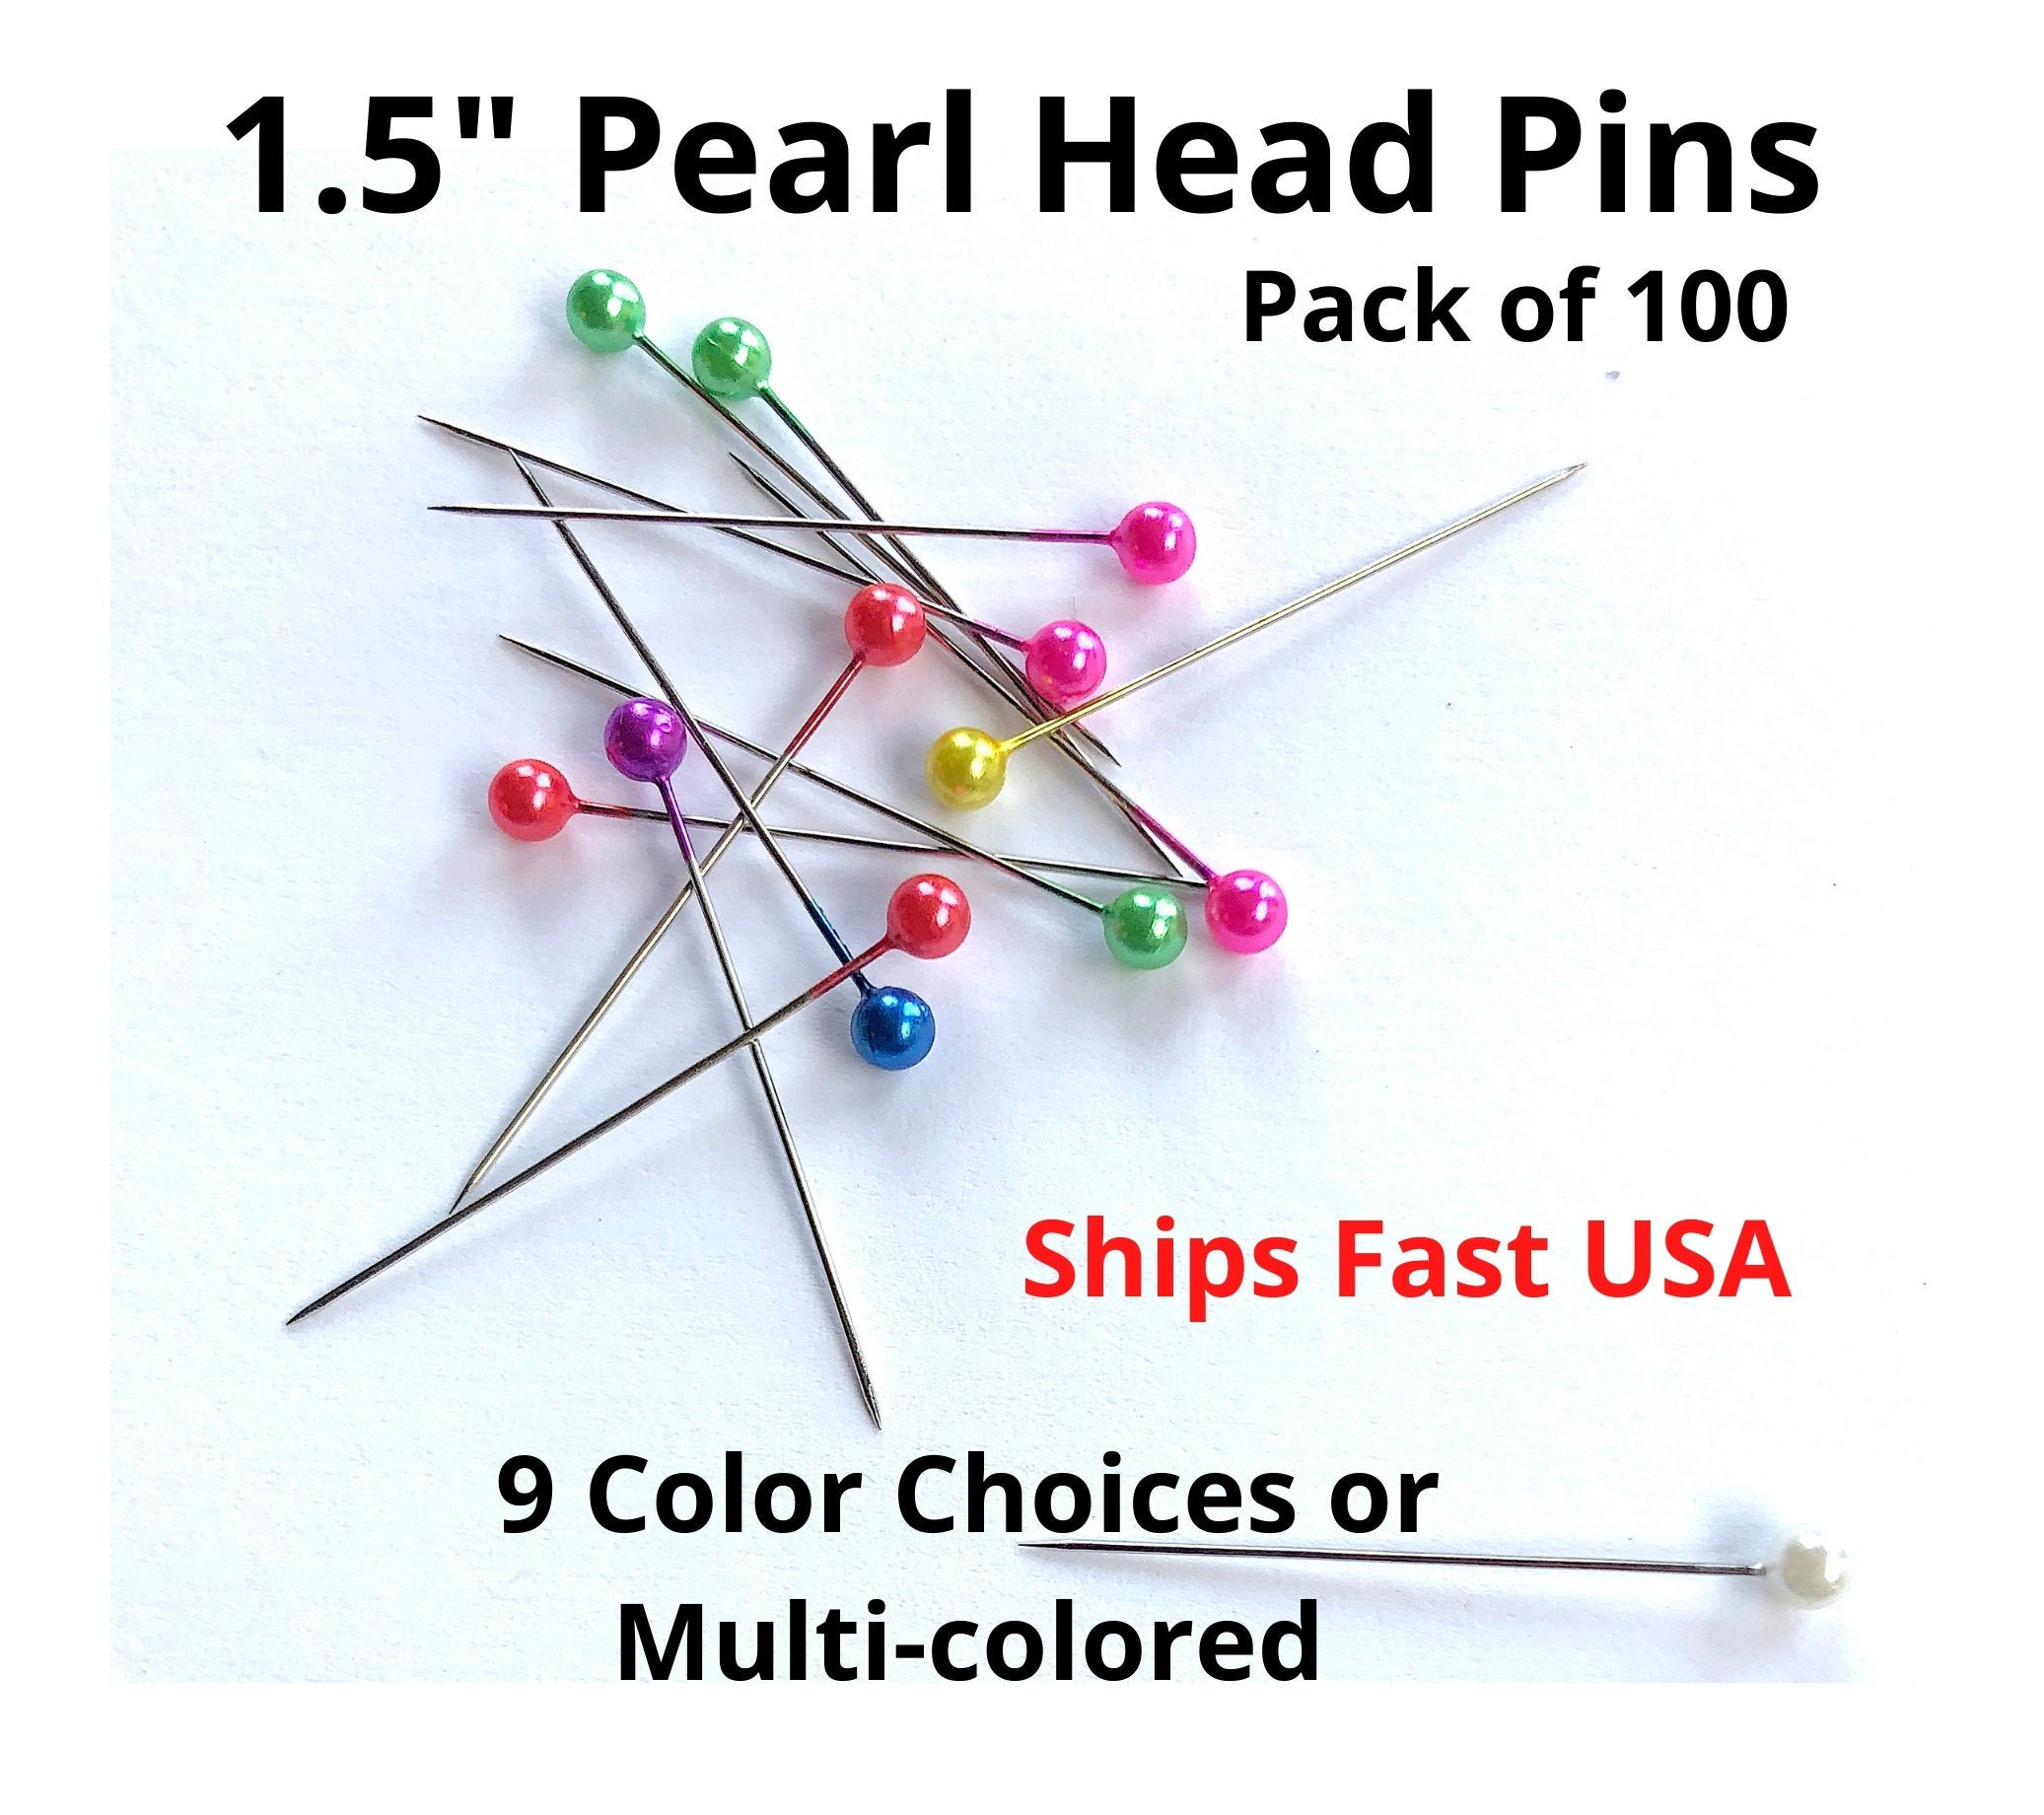 Pin Cushion, 500Pcs Sewing Pin Holder Sewing Pins, For Craft Sewing 